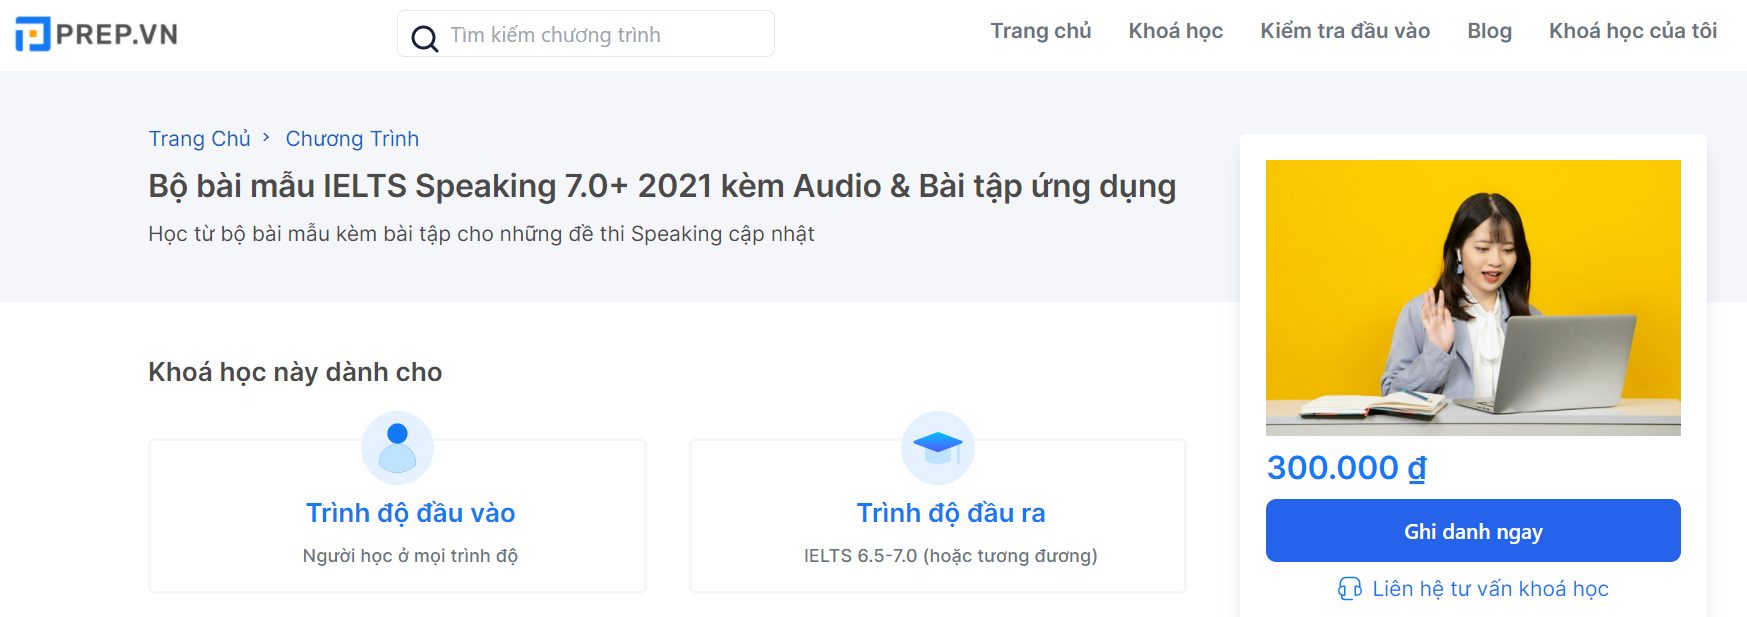 Bộ bài mẫu IELTS Speaking 7.0+ 2021 kèm audio và bài tập ứng dụng